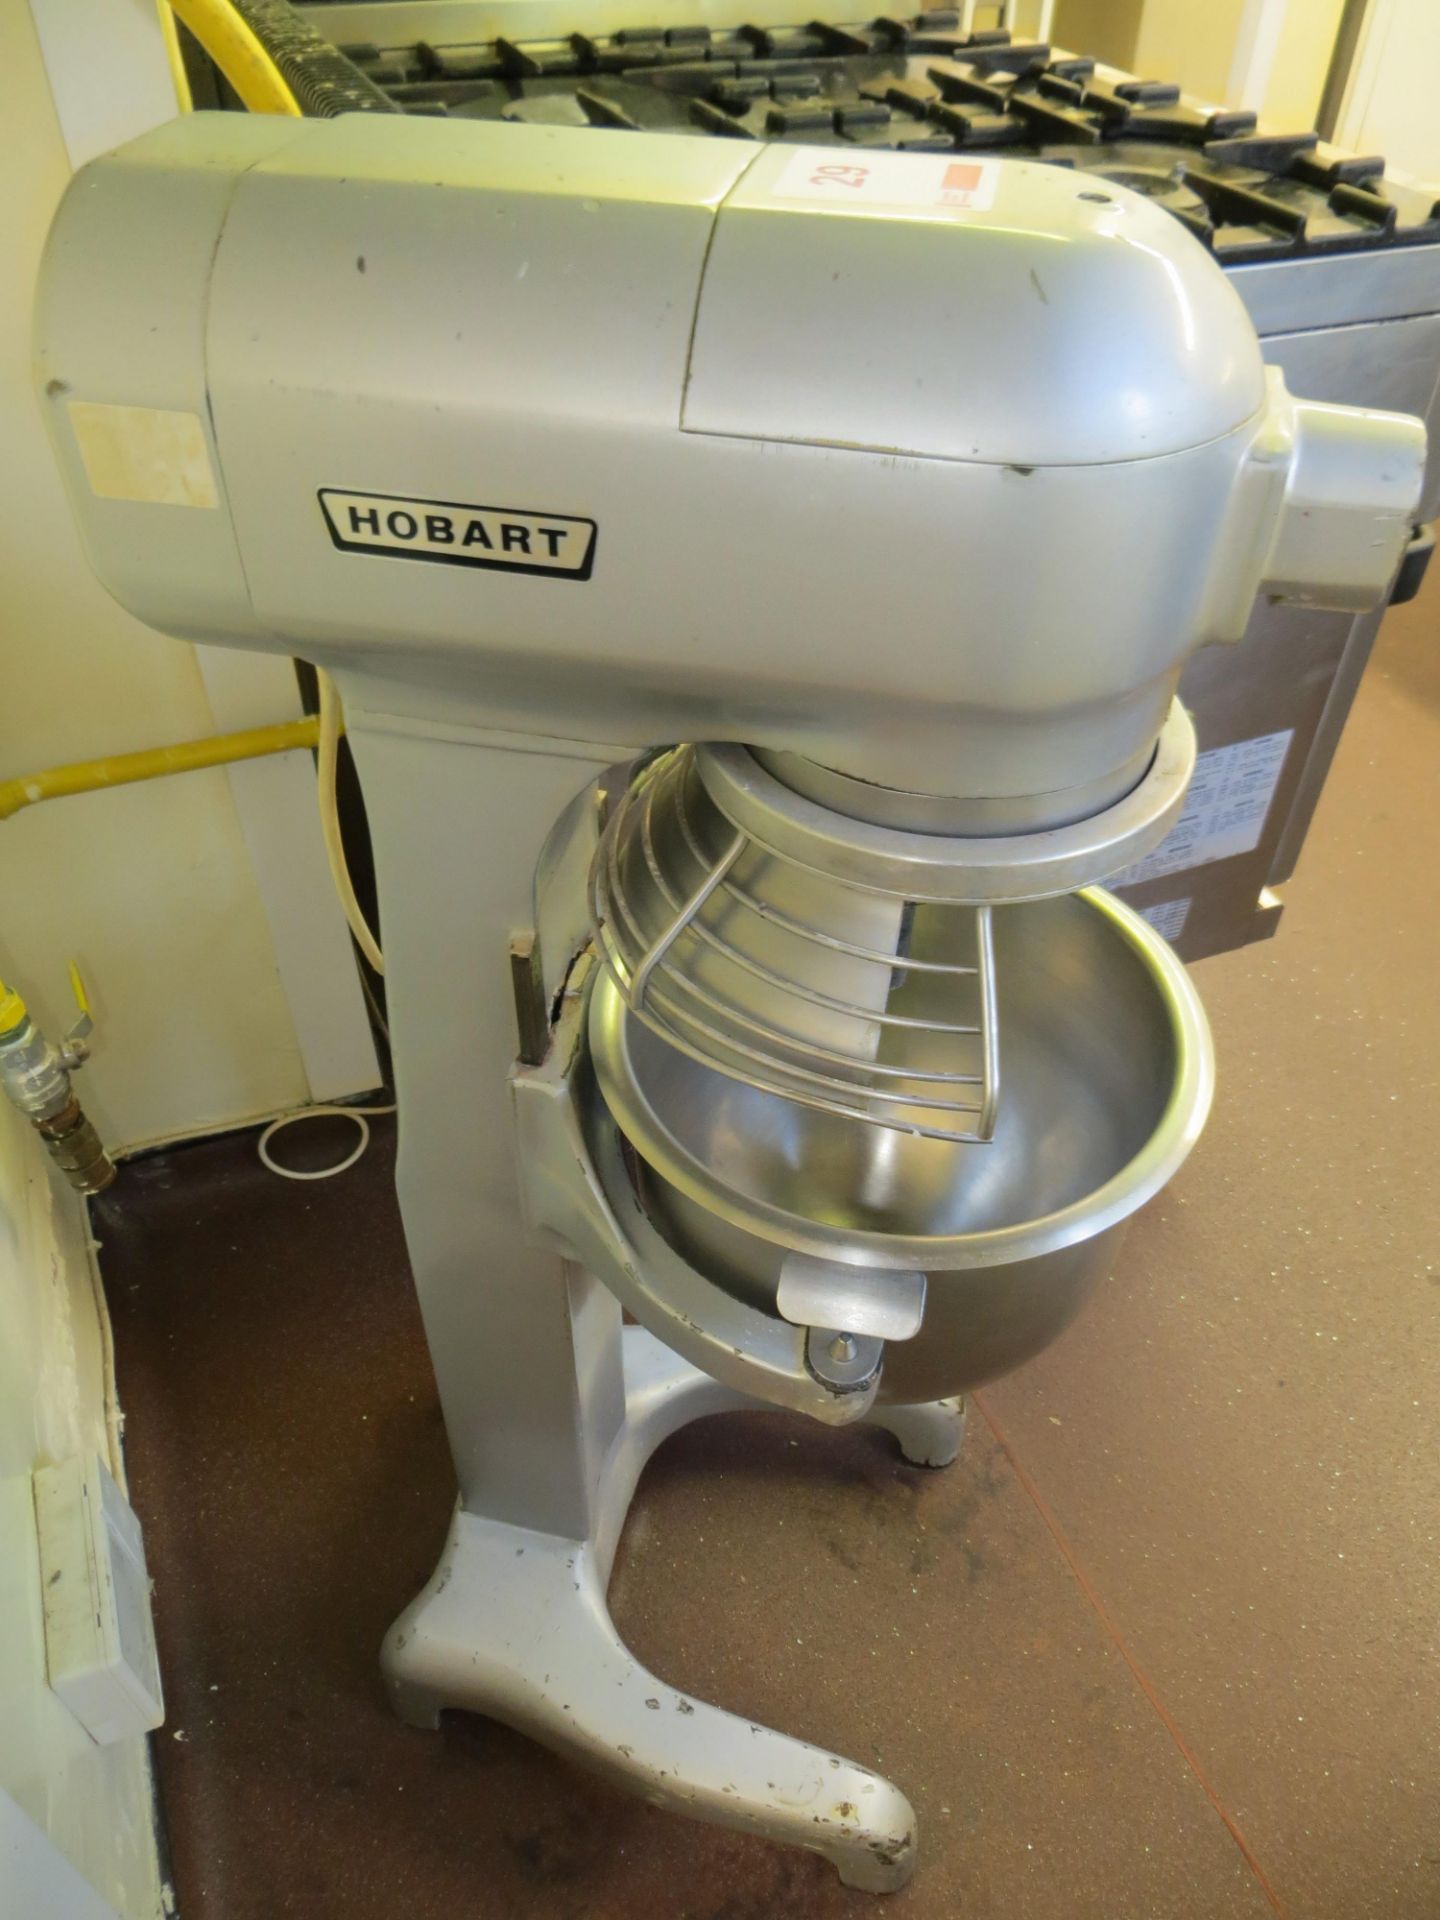 Hobart A120 mixer s/n 97110761 240v (no mixing paddles) - Image 2 of 2